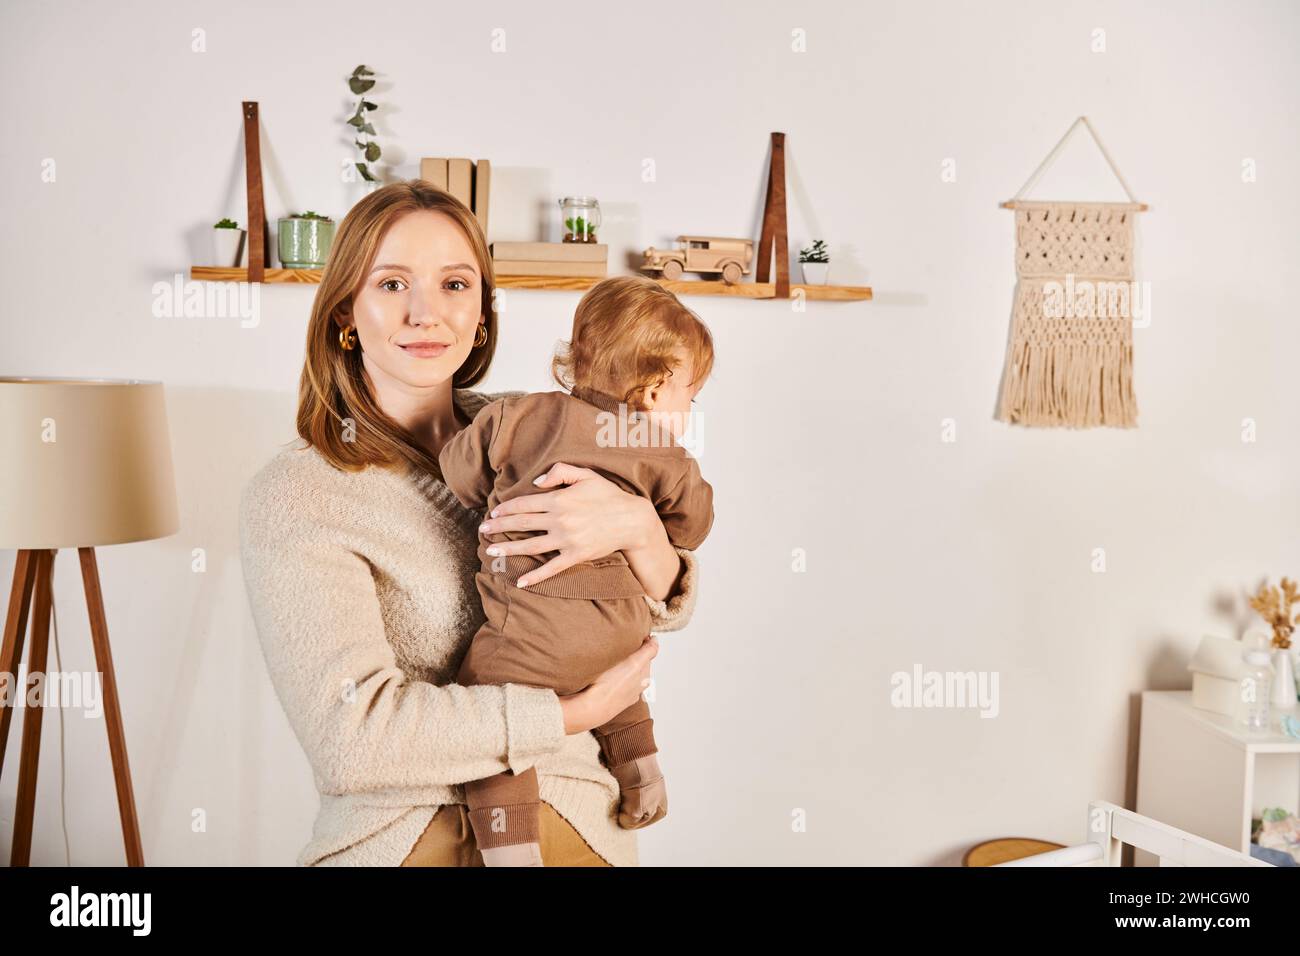 Glückliche junge Frau, die einen kleinen Kleinkinder im Kinderzimmer hält und umschließt, glückselige Mutterschaft Stockfoto